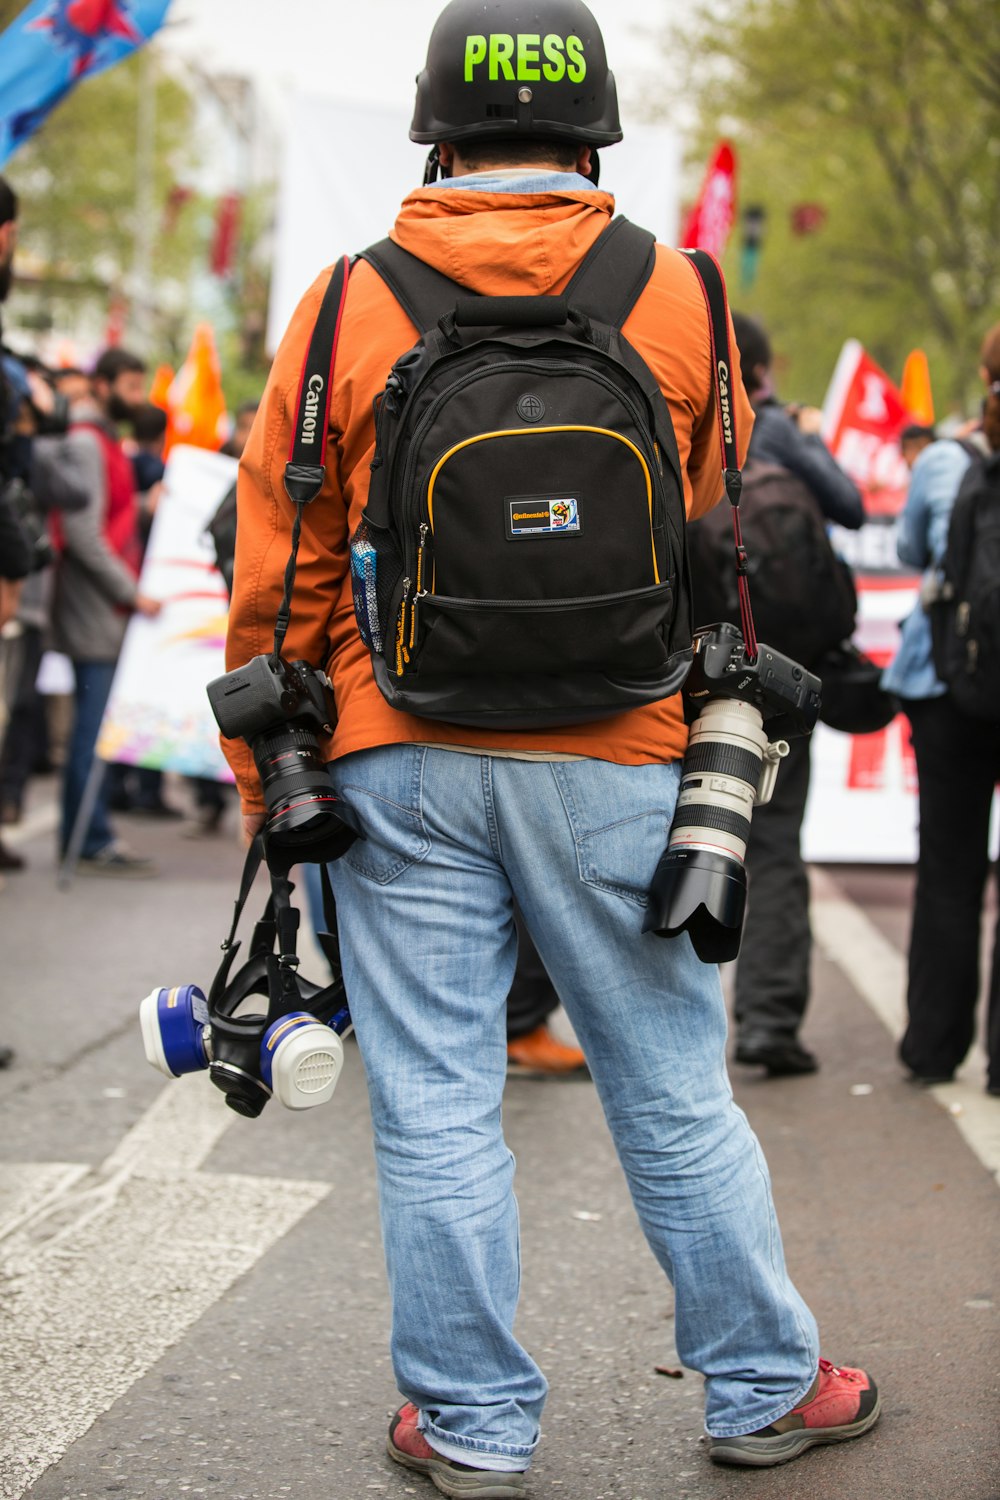 ブルーデニムのジーンズとオレンジ色のリュックサックを背負った人が昼間、通りを歩いている